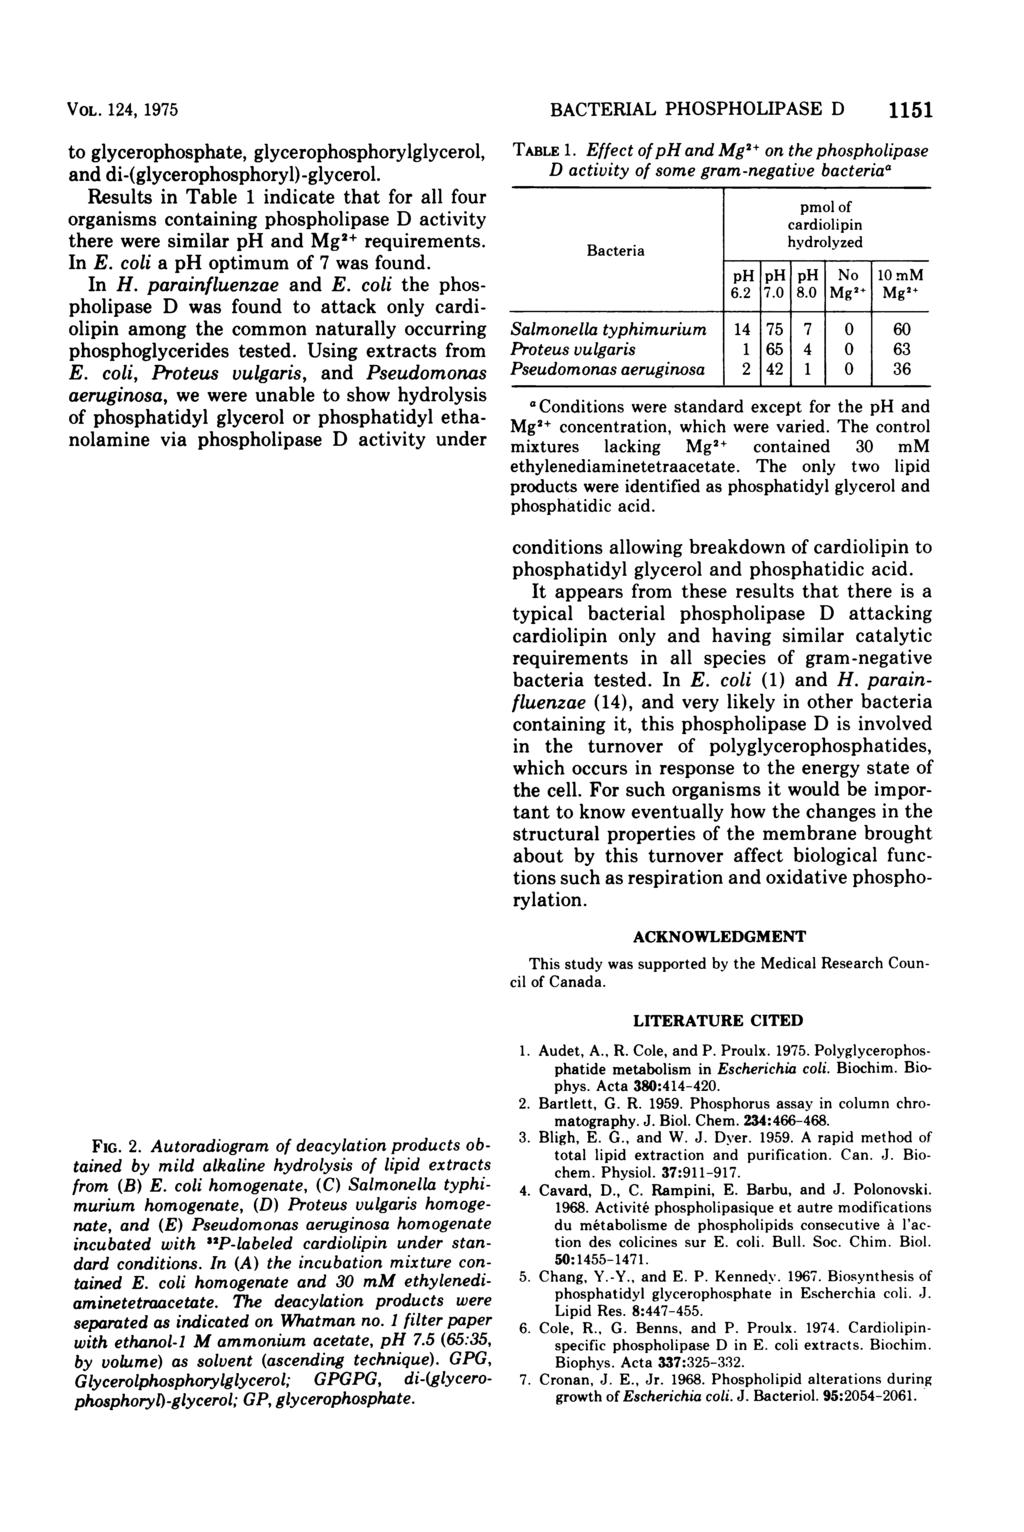 VOL. 124, 1975 to glycerophosphate, glycerophosphorylglycerol, and di-(glycerophosphoryl)-glycerol.